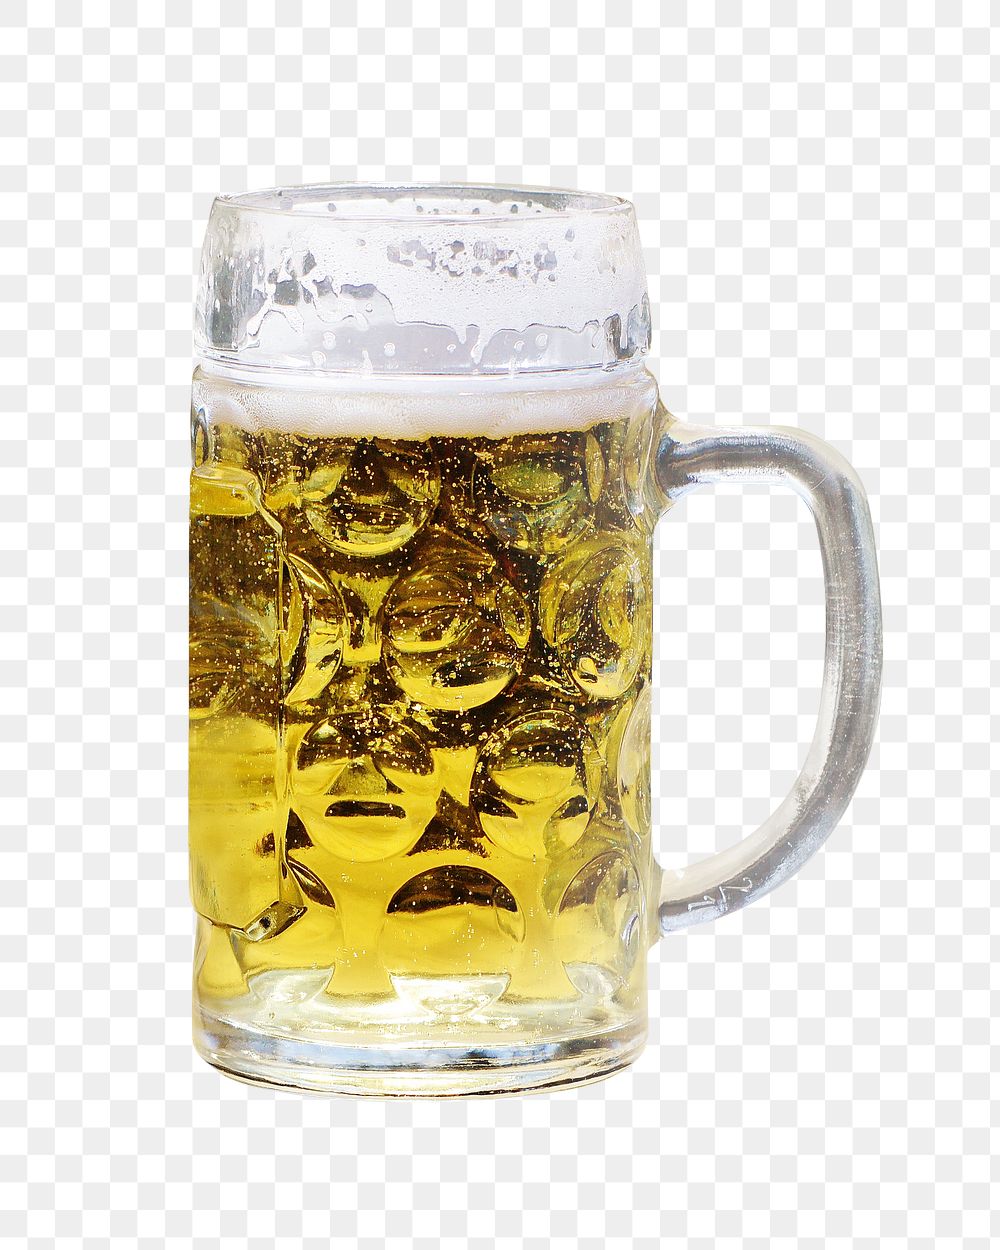 Beer mug png, transparent background